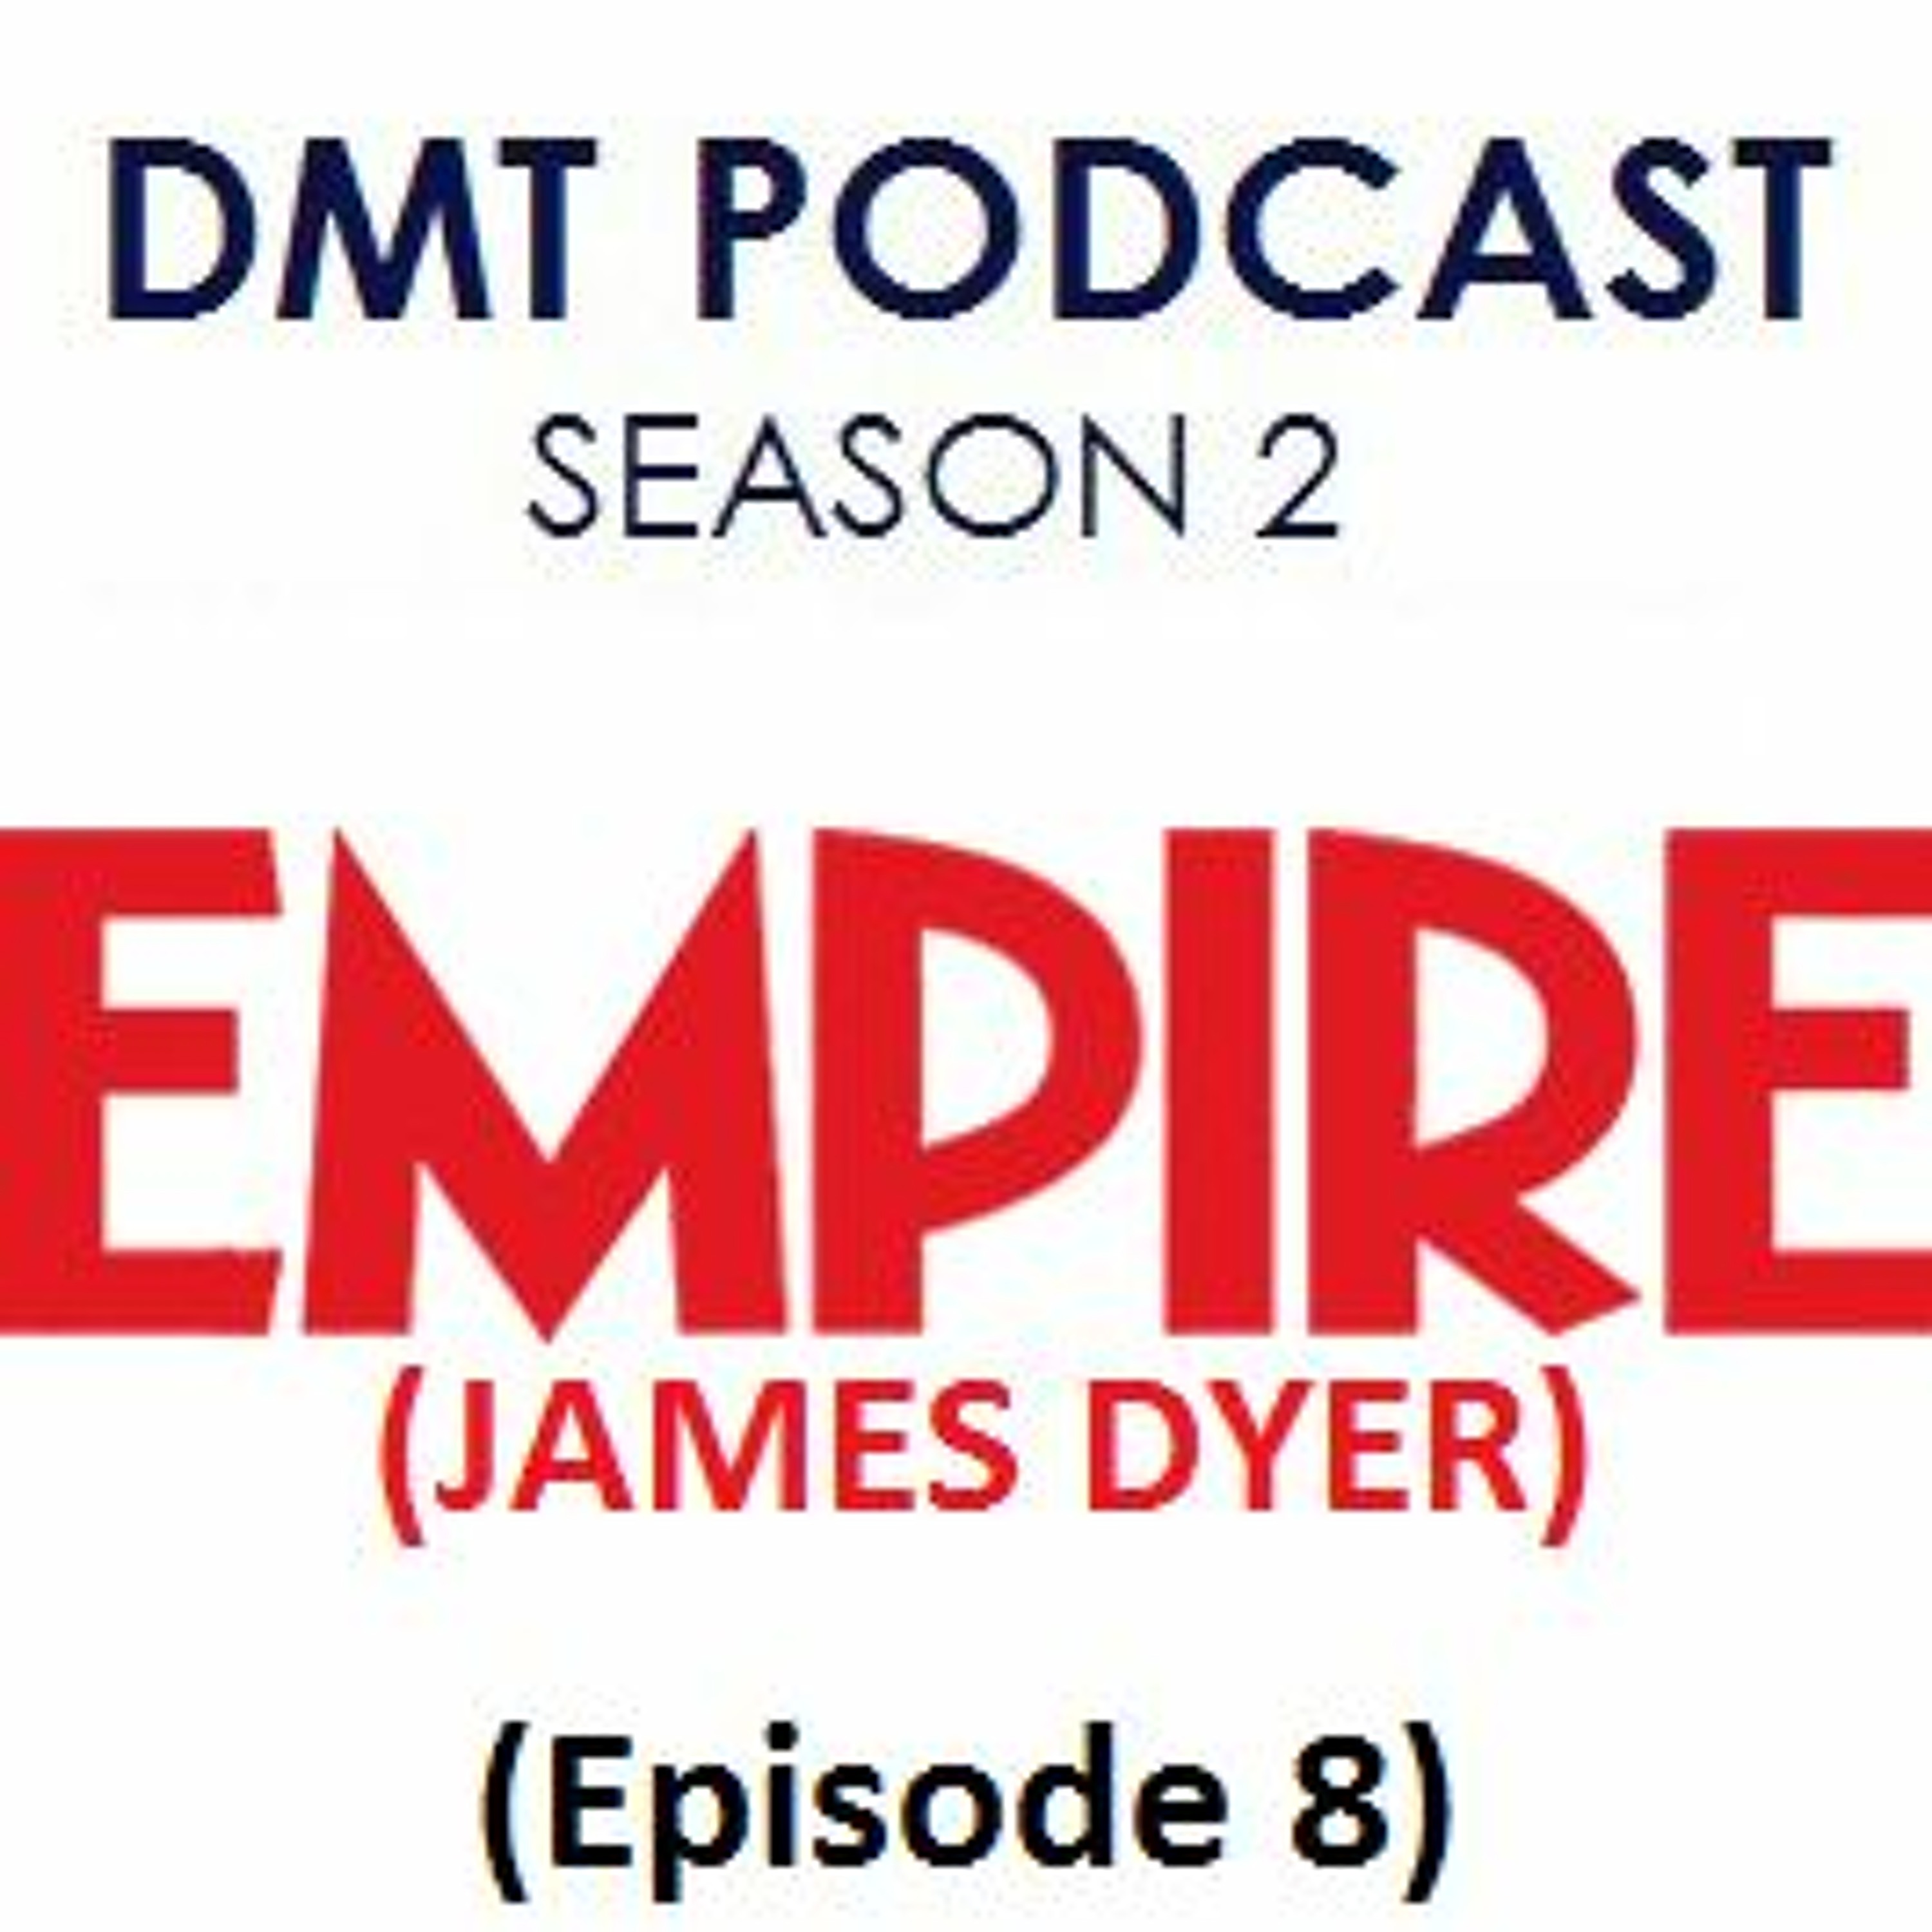 Empire Magazine’s James Dyer | DMT Podcast Archive